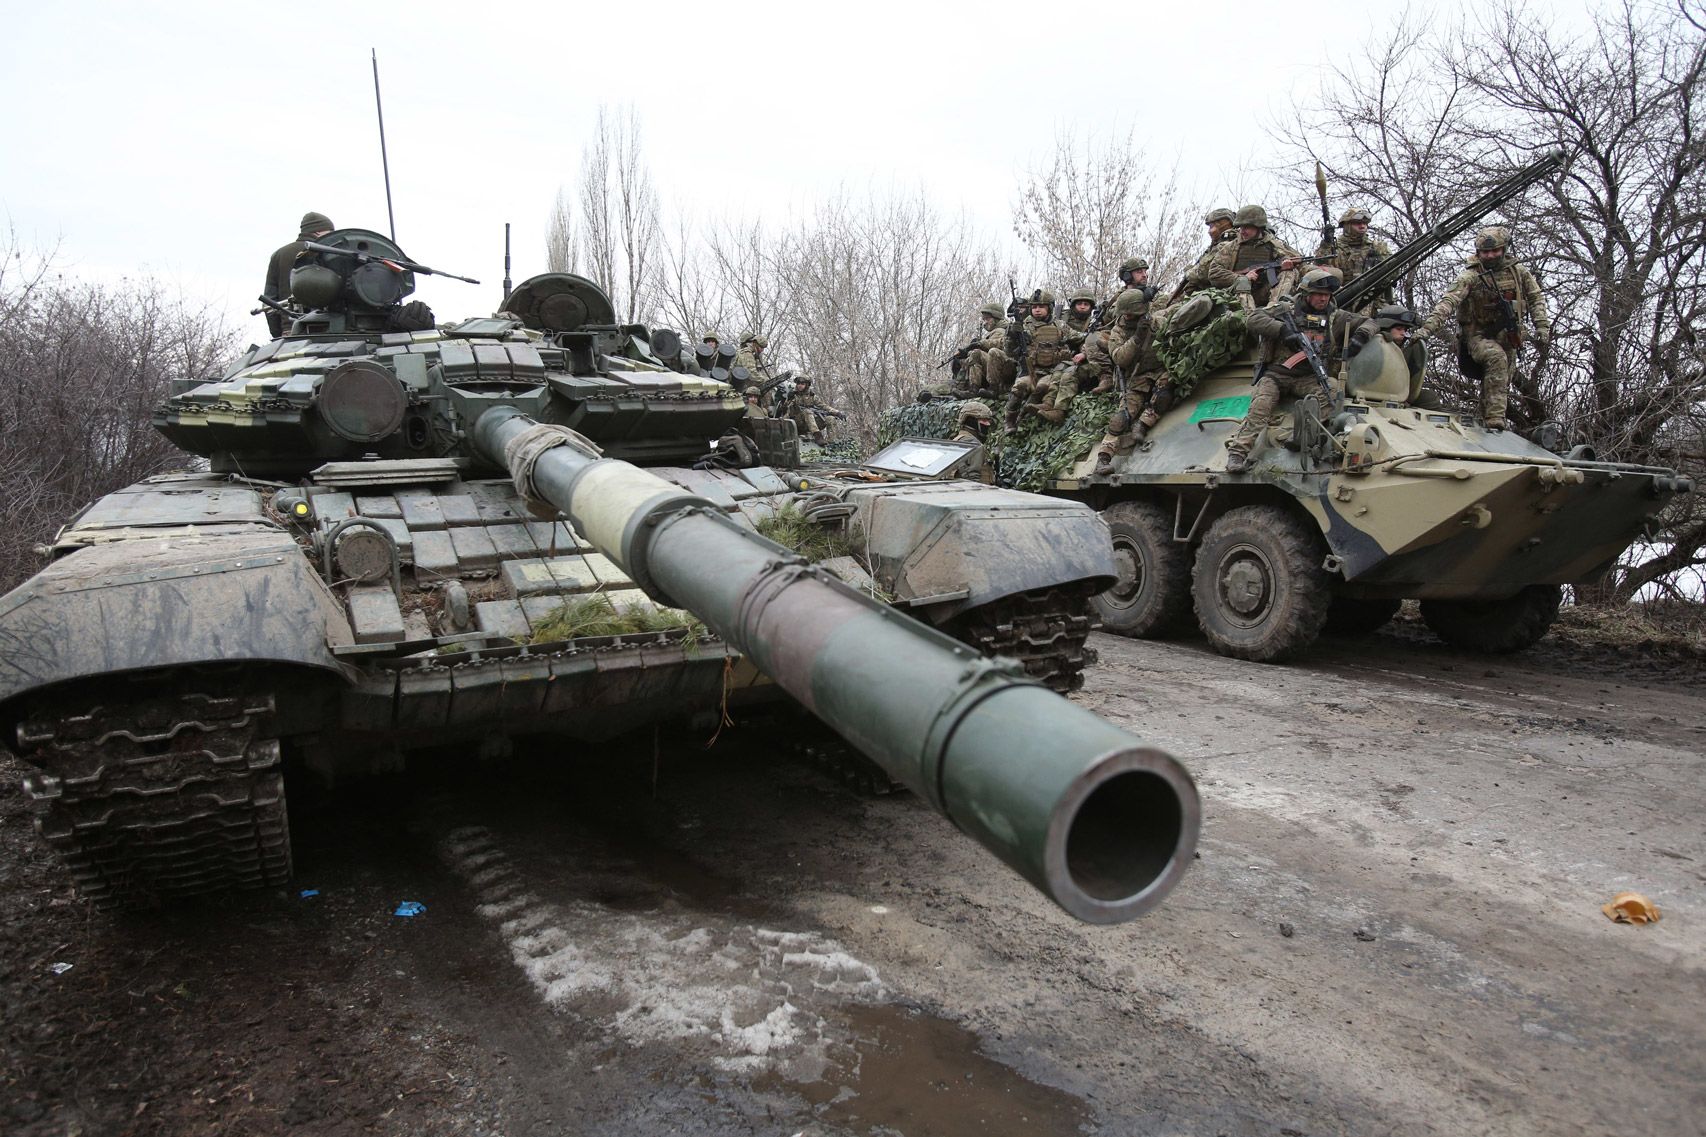 Liệu Nga có đủ tiền để chi cho cuộc chiến ở Ukraina? - Ảnh 4.